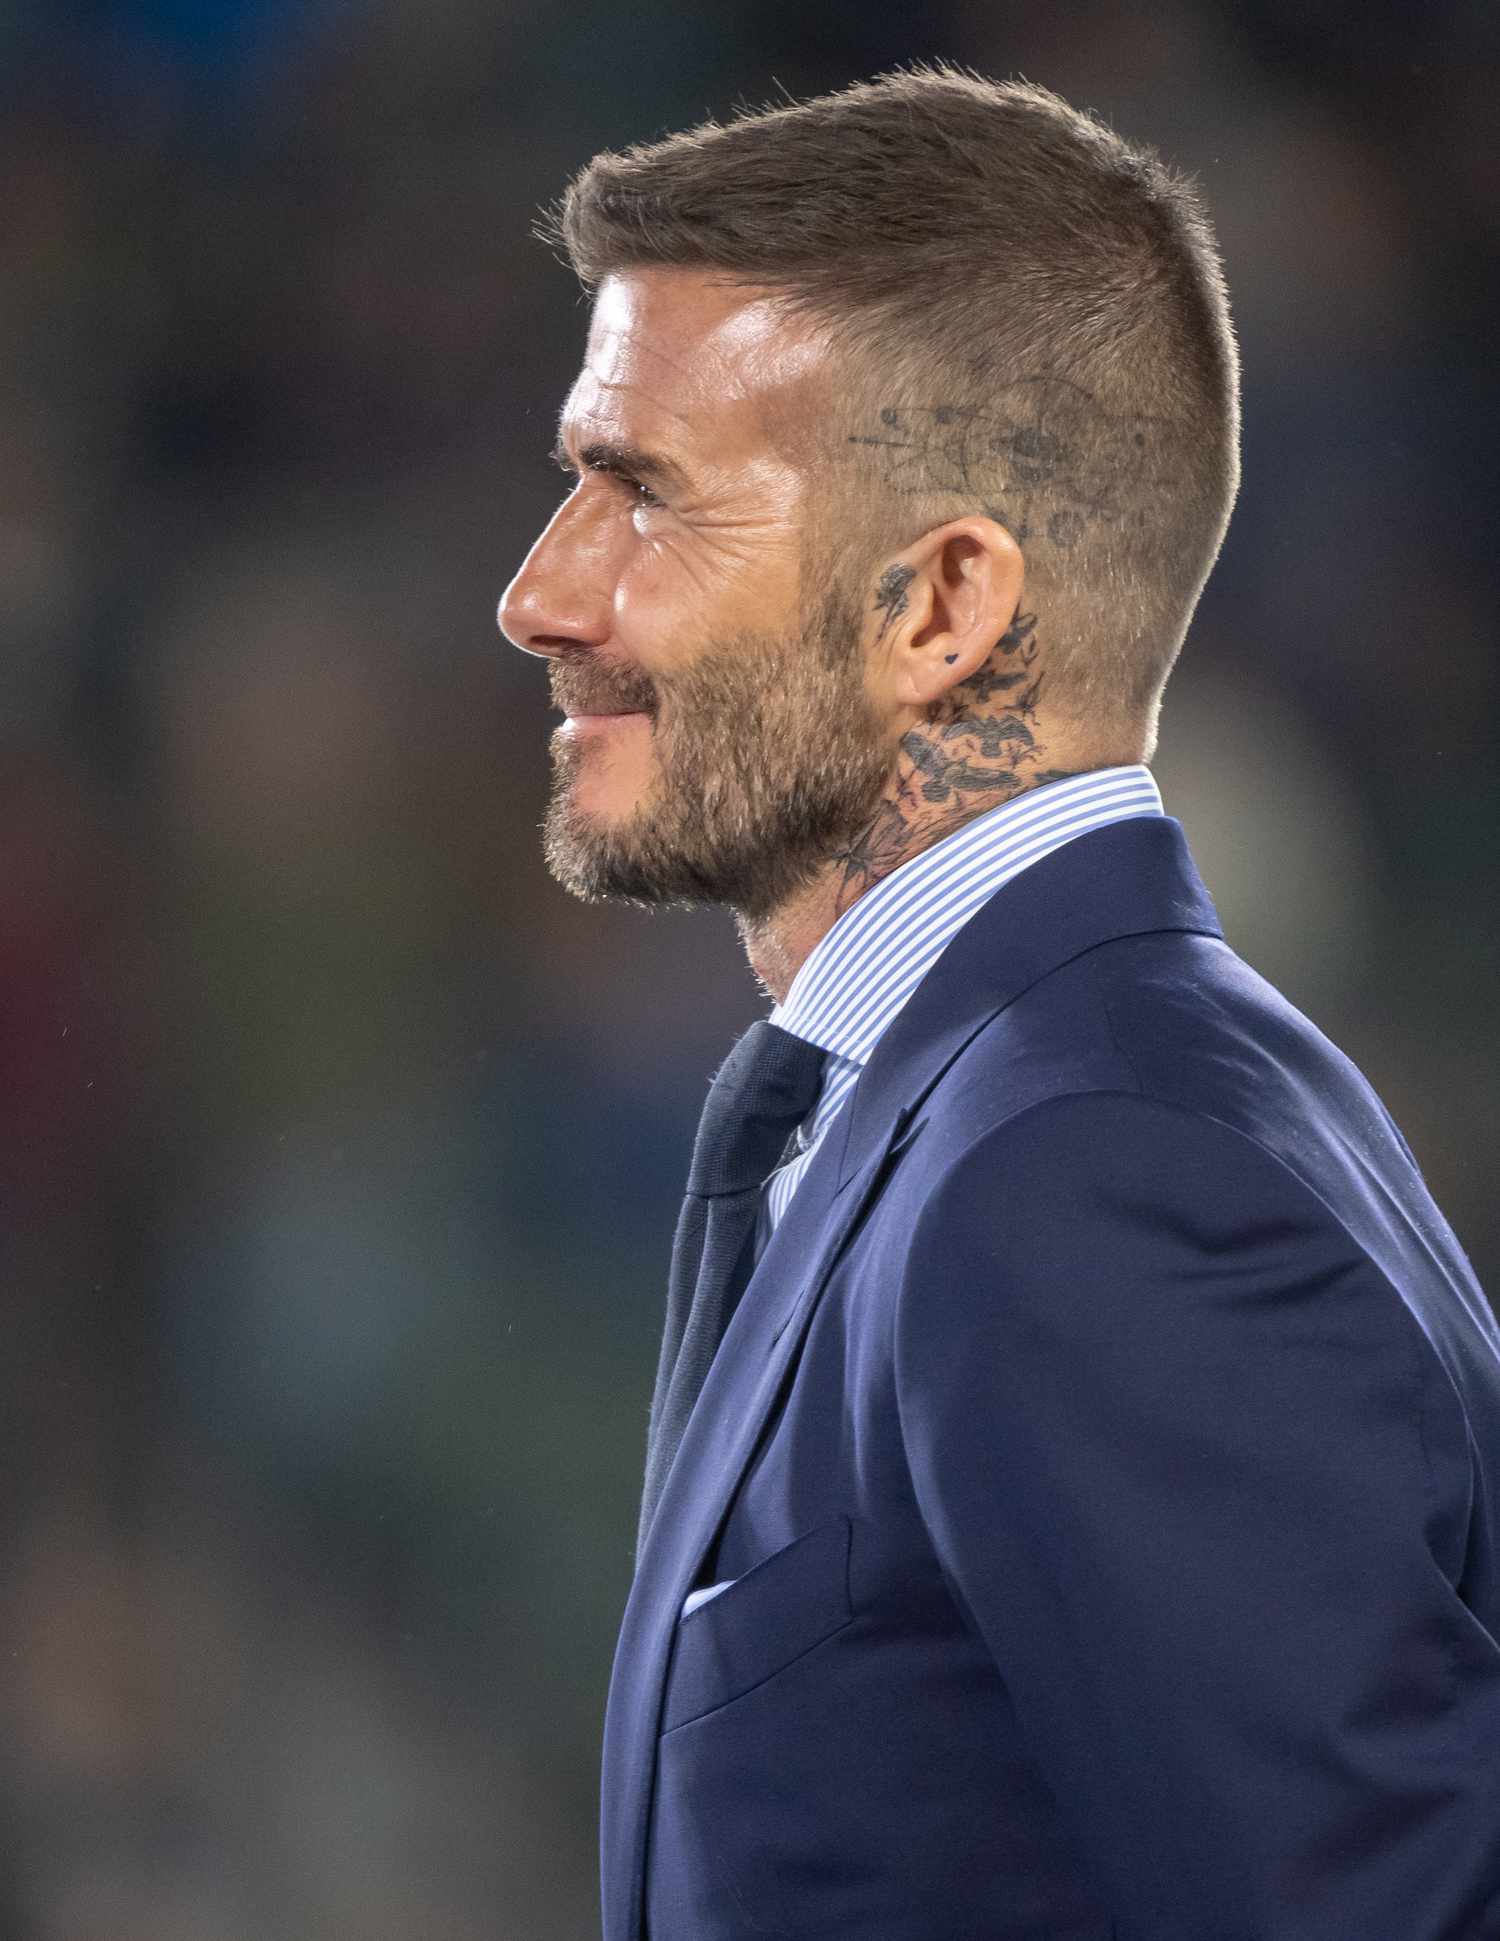 David Beckham demonstra uma tatuagem no couro cabeludo e cortes de corte de cabelo durante a cerimônia de entrar no círculo honorário durante o intervalo da partida da MLS 